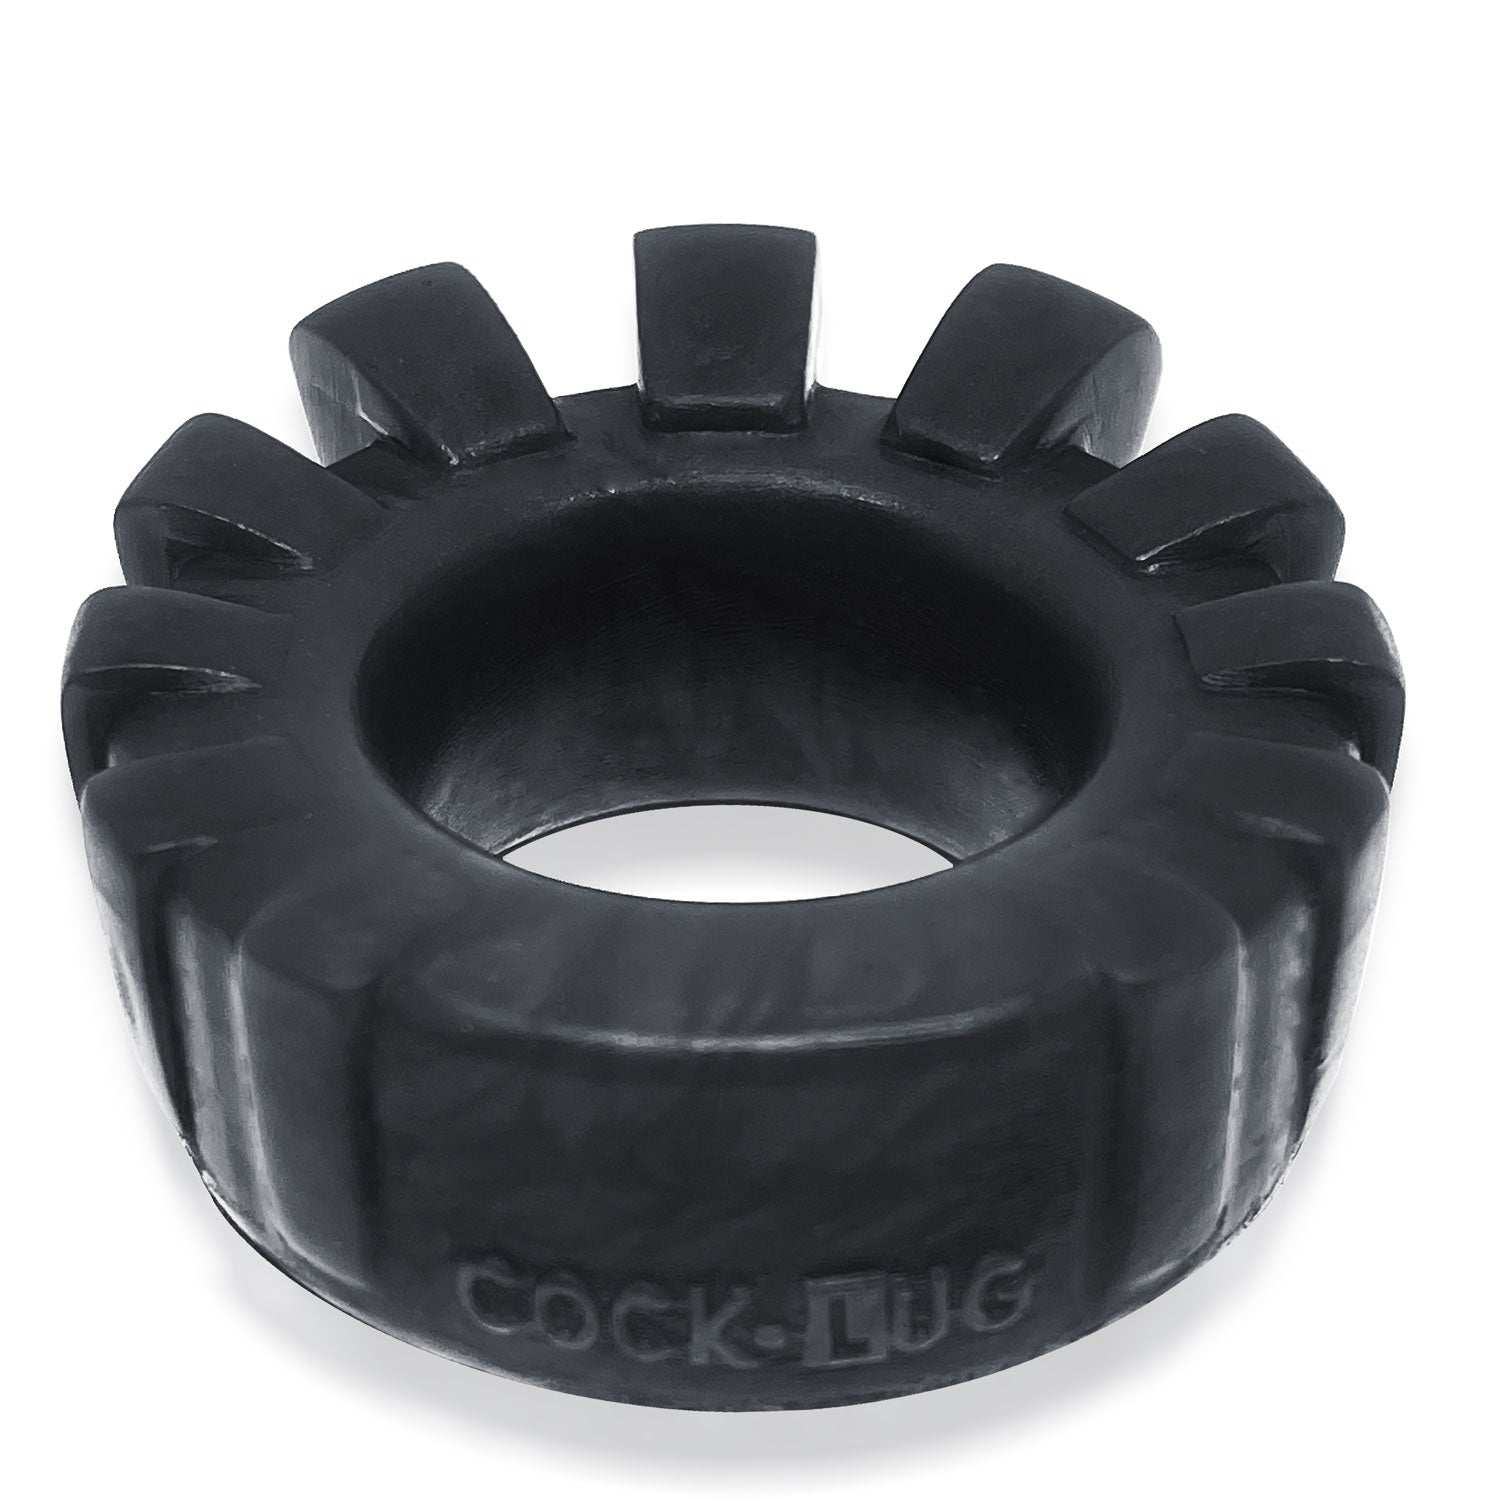 Cock-Lug Lugged Cockring -  Black